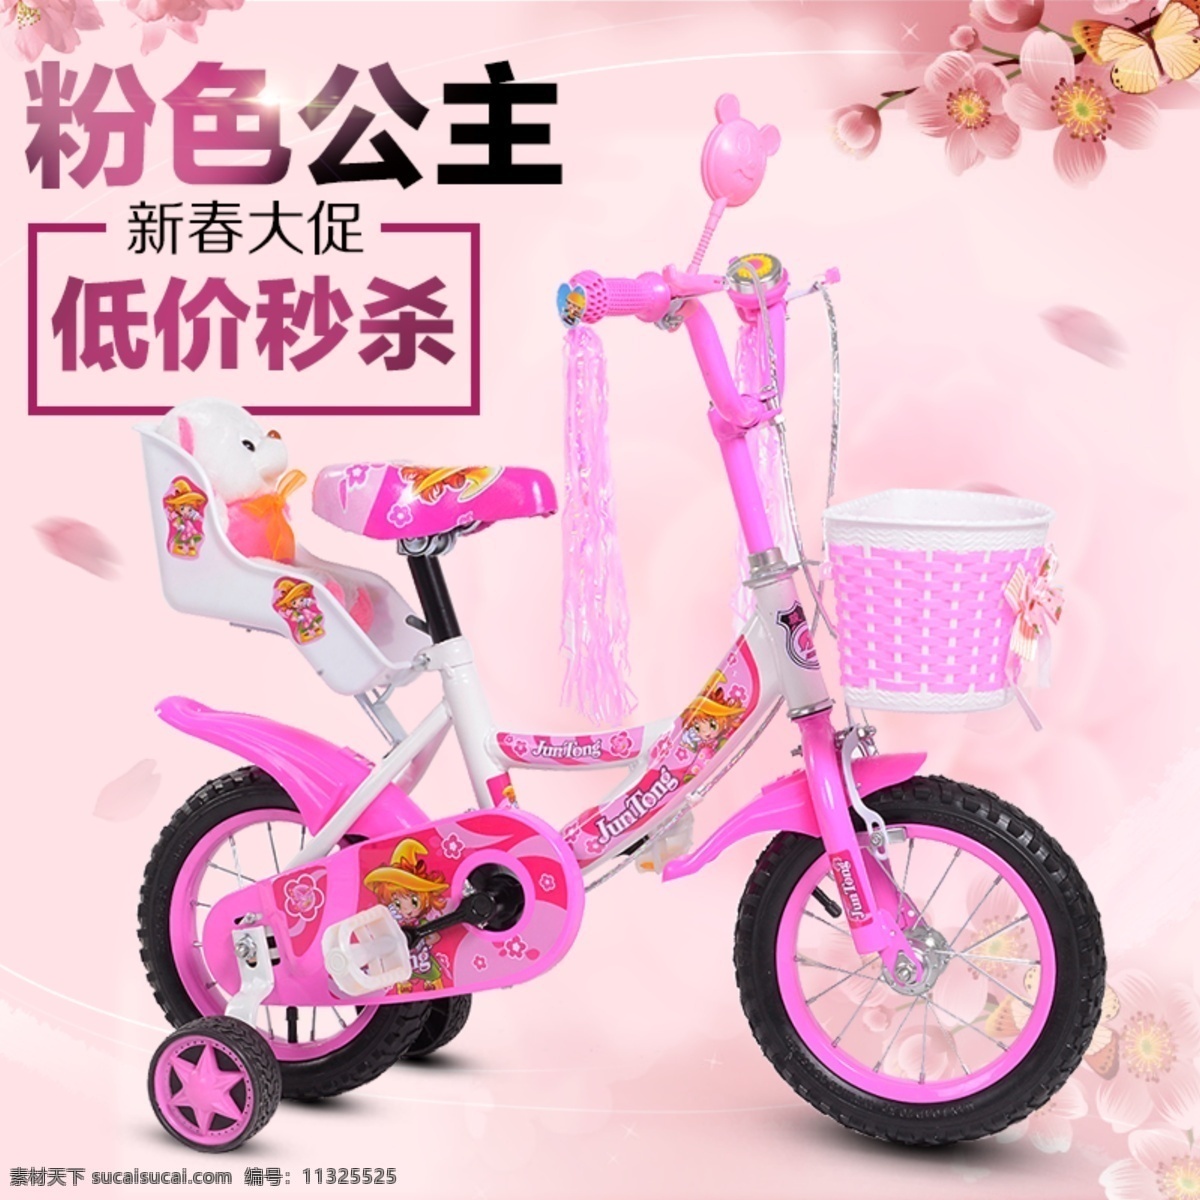 女童 自行车 直通 车主 图 儿童 主图 淘宝 粉色